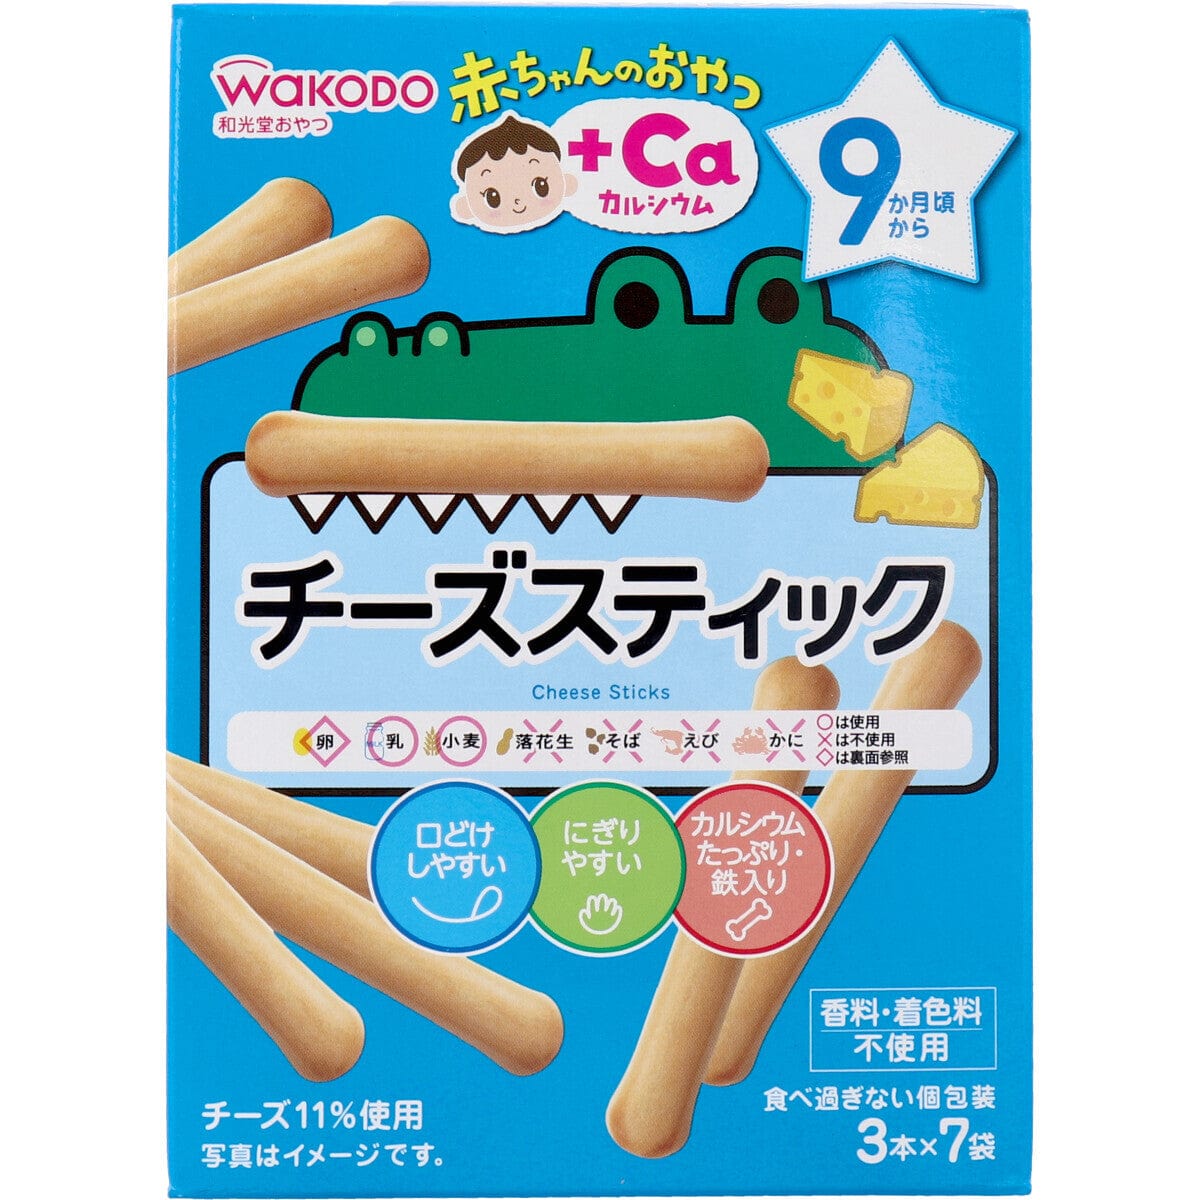 Wakodo - Baby Snacks + Ca Cheese Sticks Teether Biscuits 3 x 7 bags WAK1005 CherryAffairs